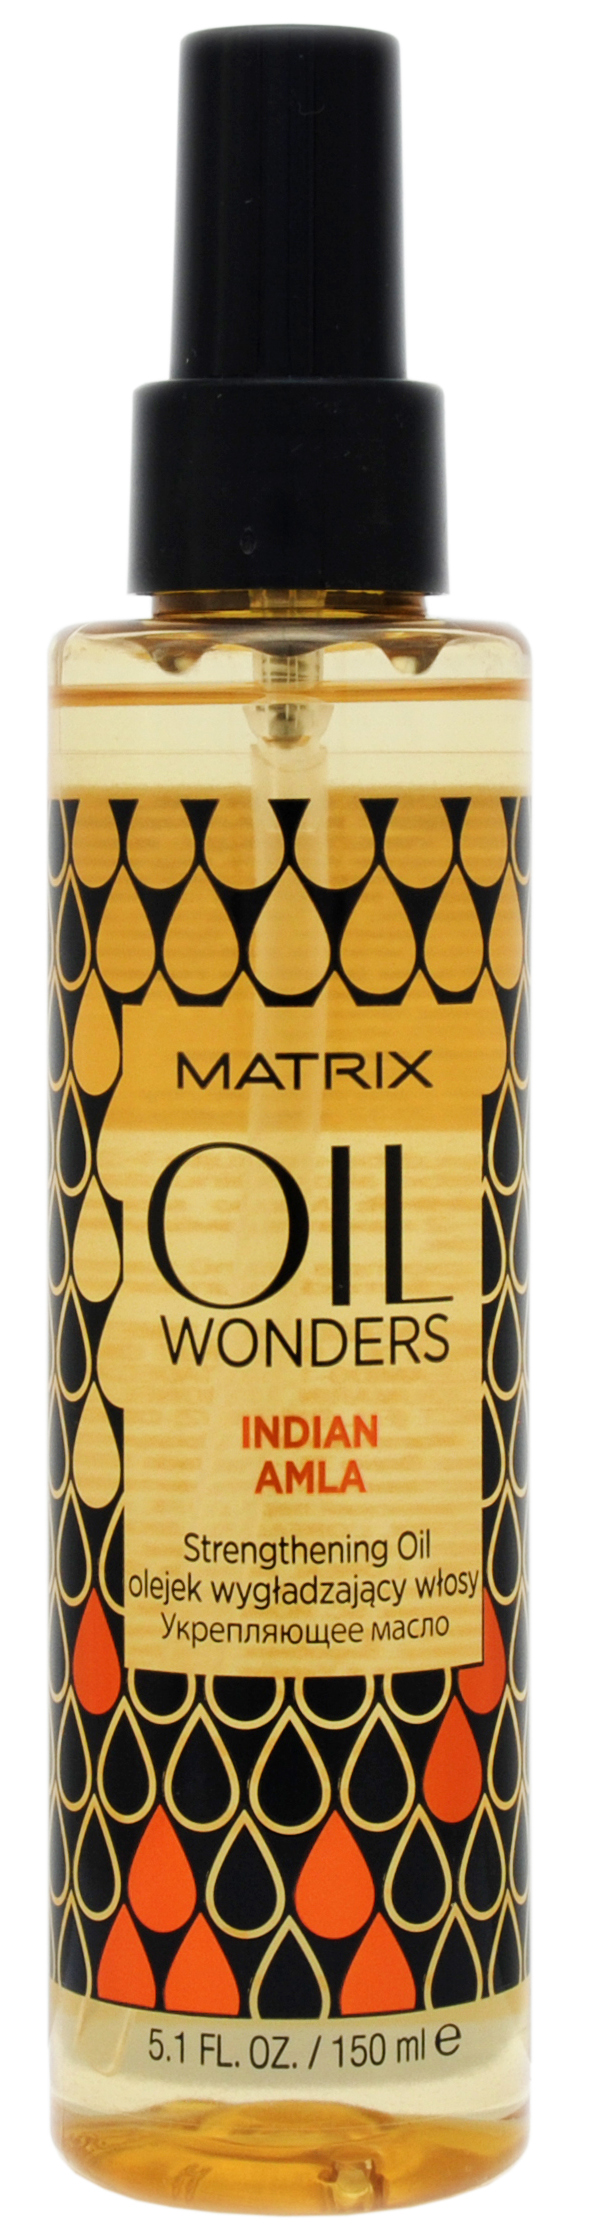 Маtriх oil wonders укрепляющее масло indian amla 150мл БС